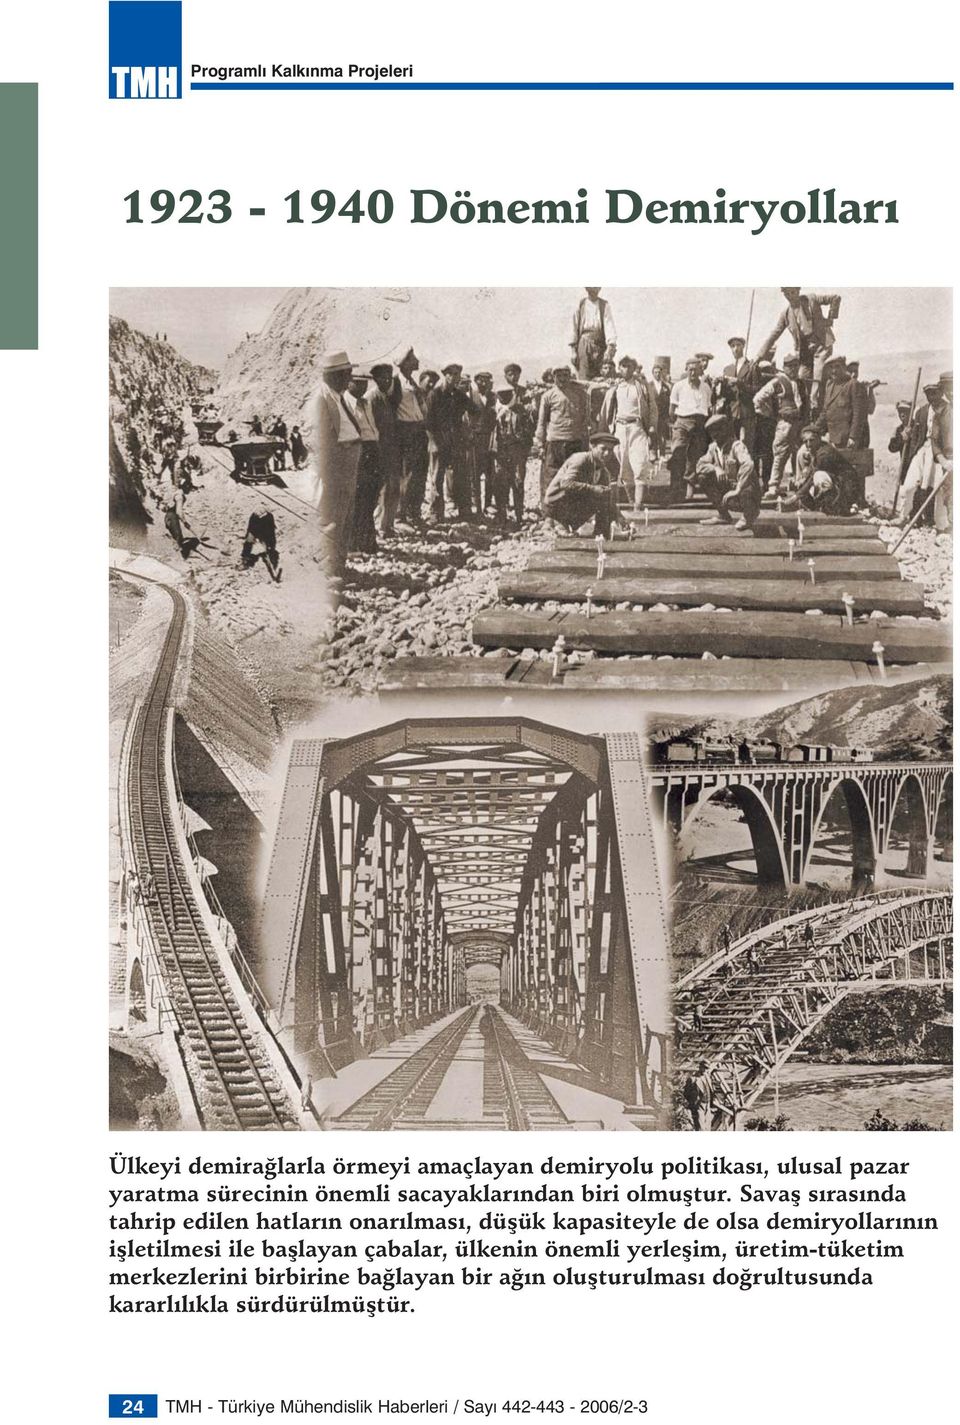 Savaş sırasında tahrip edilen hatların onarılması, düşük kapasiteyle de olsa demiryollarının işletilmesi ile başlayan